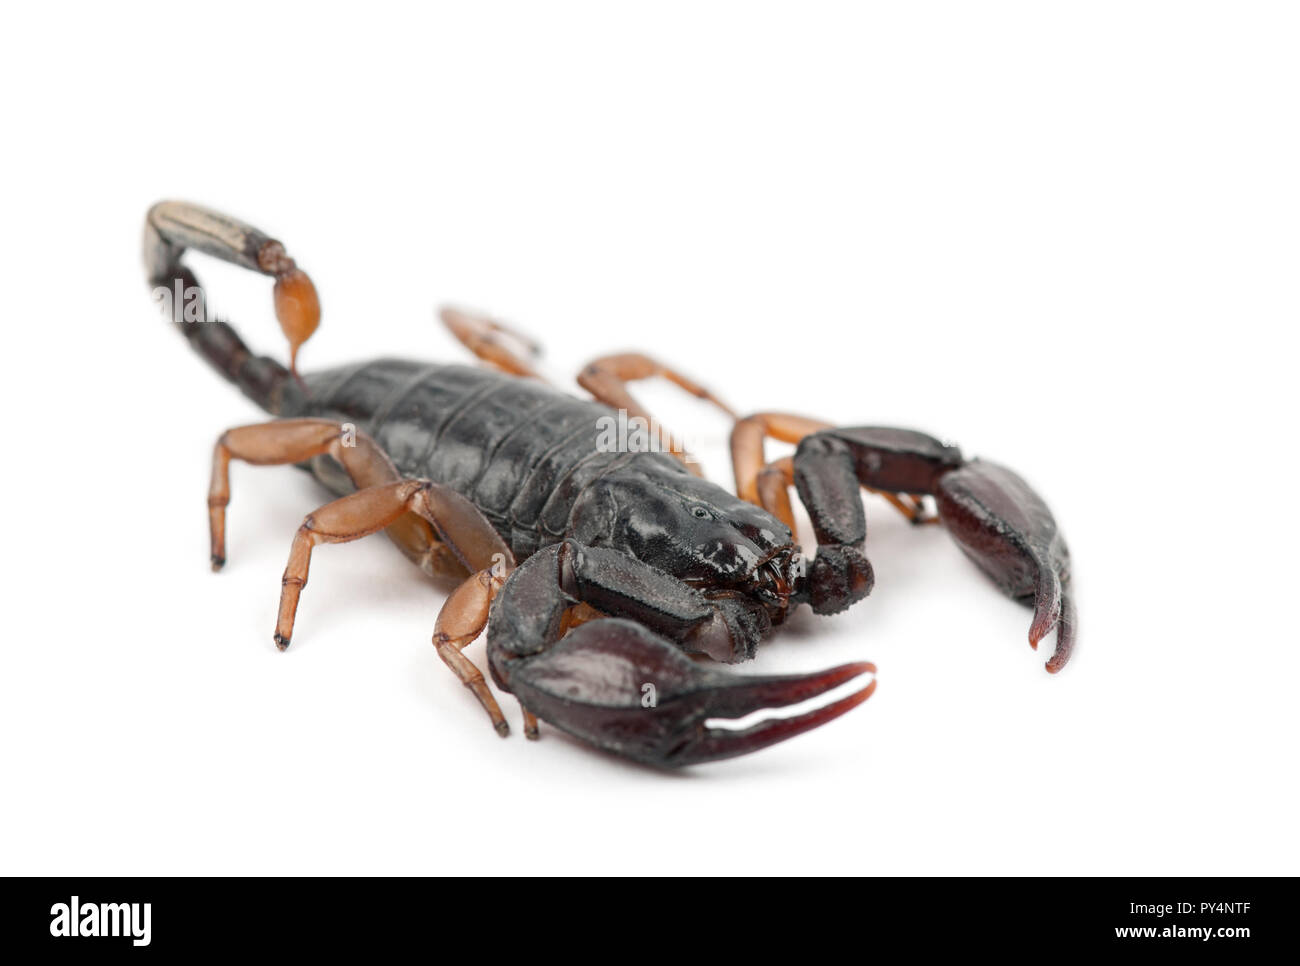 European Yellow-Tailed Scorpion, Euscorpius flavicaudis, against white background Stock Photo